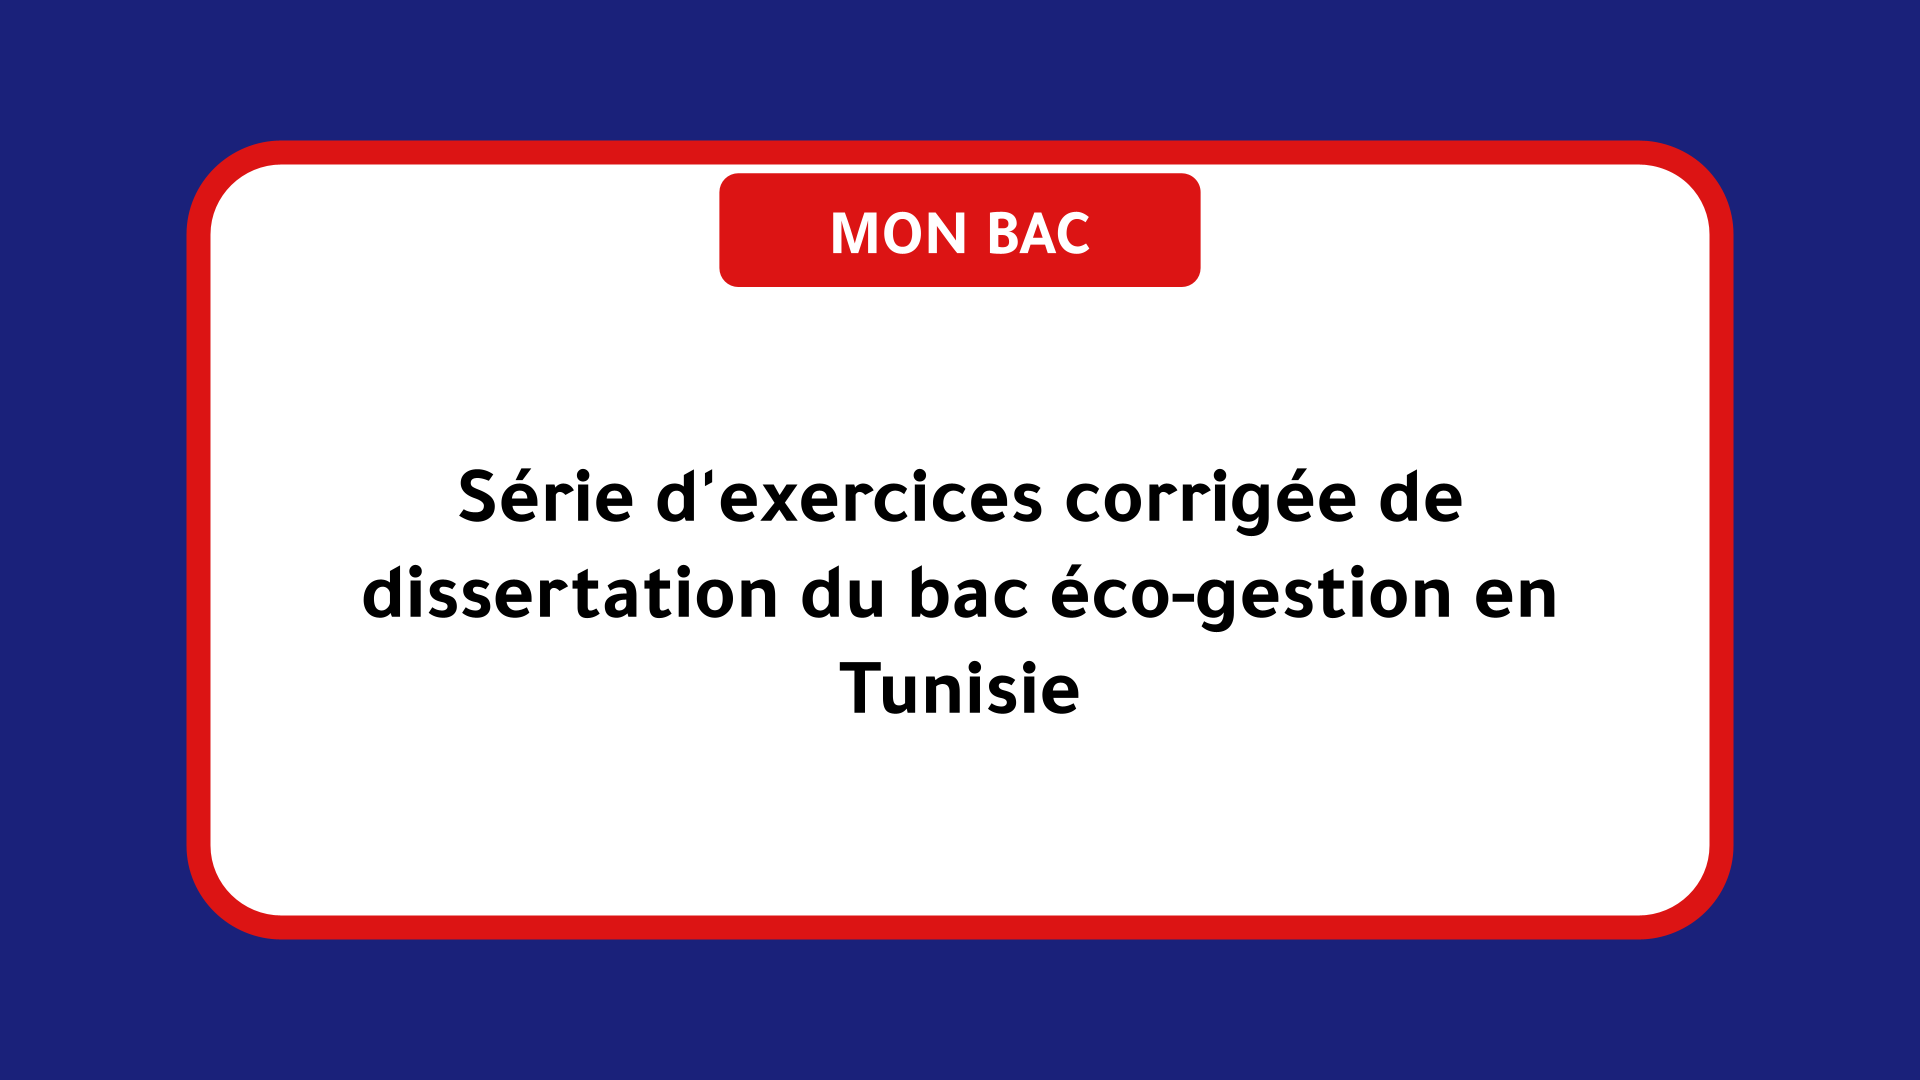 Série d'exercices corrigée de dissertation bac éco-gestion Tunisie